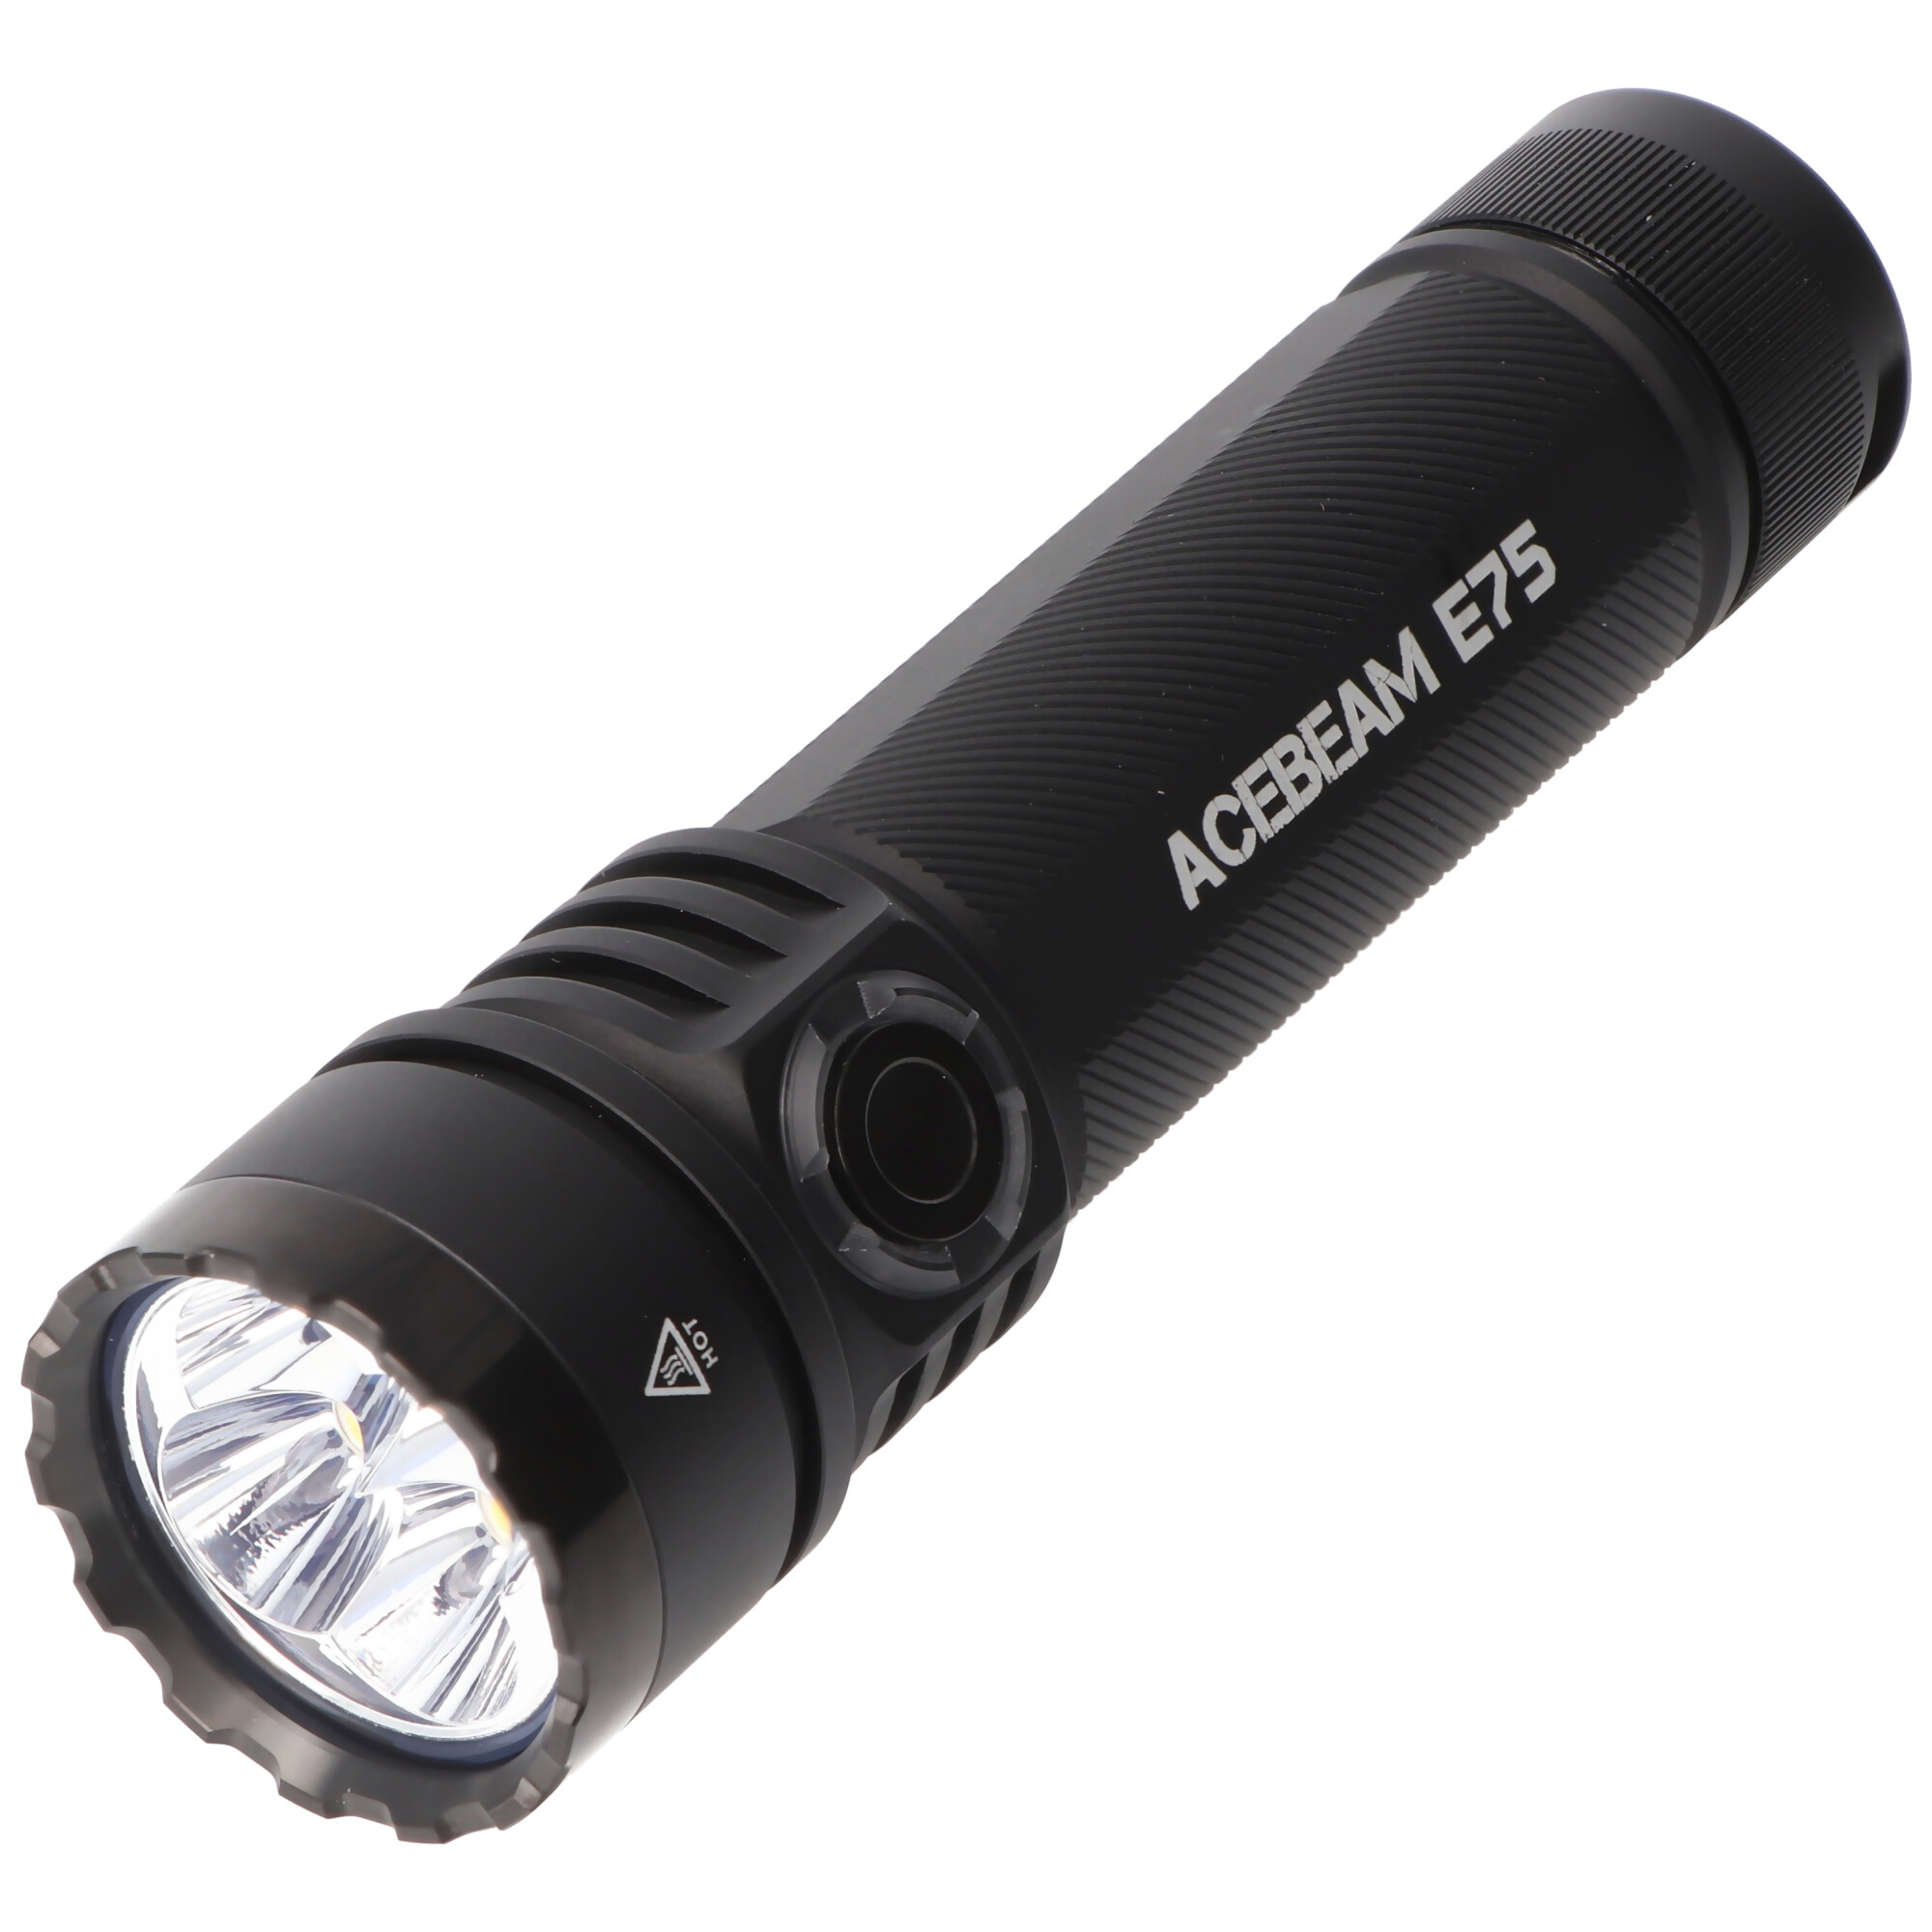 AceBeam E75 Quad Core LED Taschenlampe schwarz, 5.000K, bis zu 3000 Lumen Helligkeit, inklusive 21700 5000mAh Li-Ion Akku